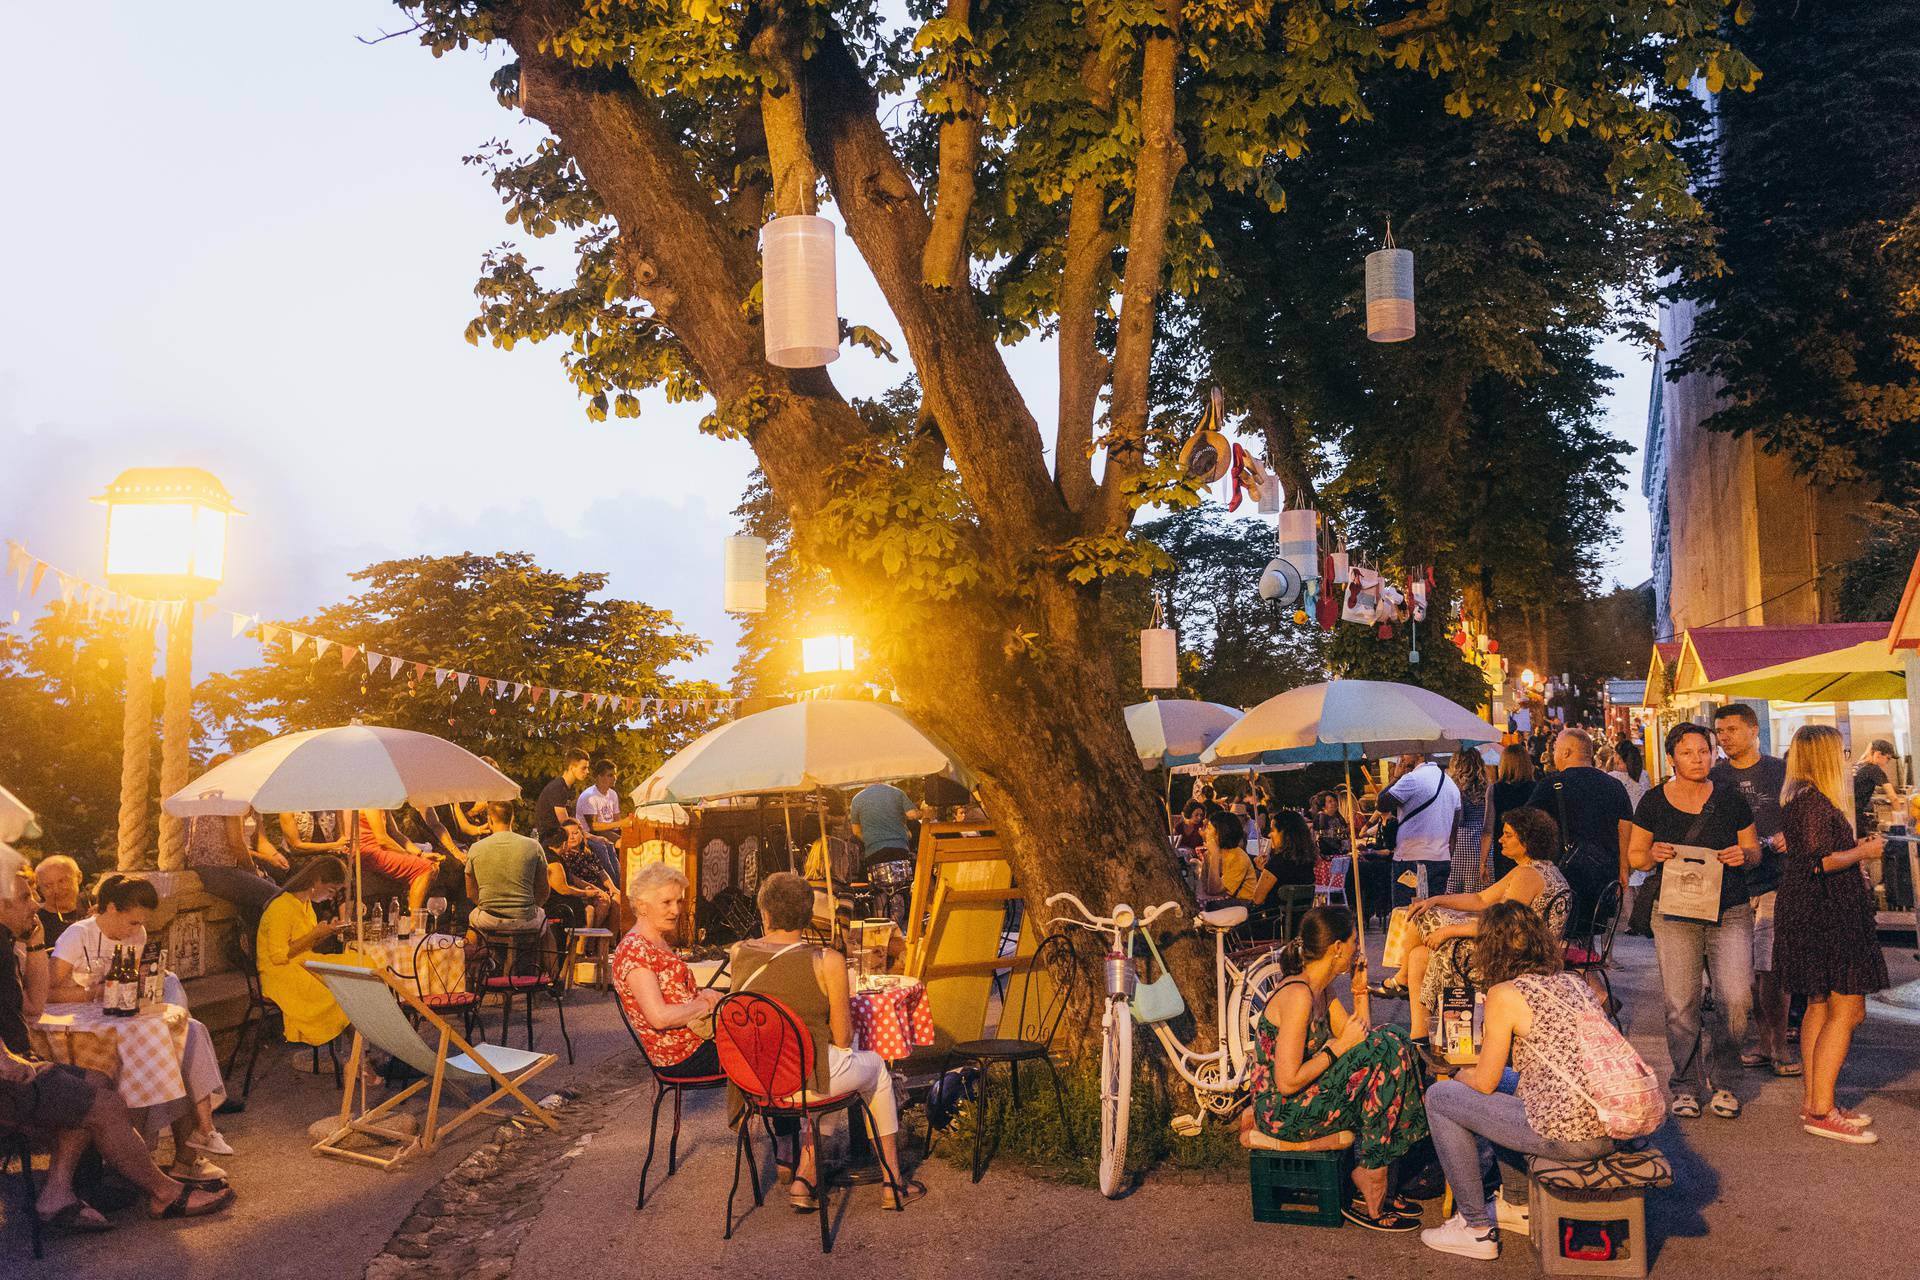 Ljeto u Zagrebu bogato je kulturnim događanjima: Izdvajamo najzanimljivije